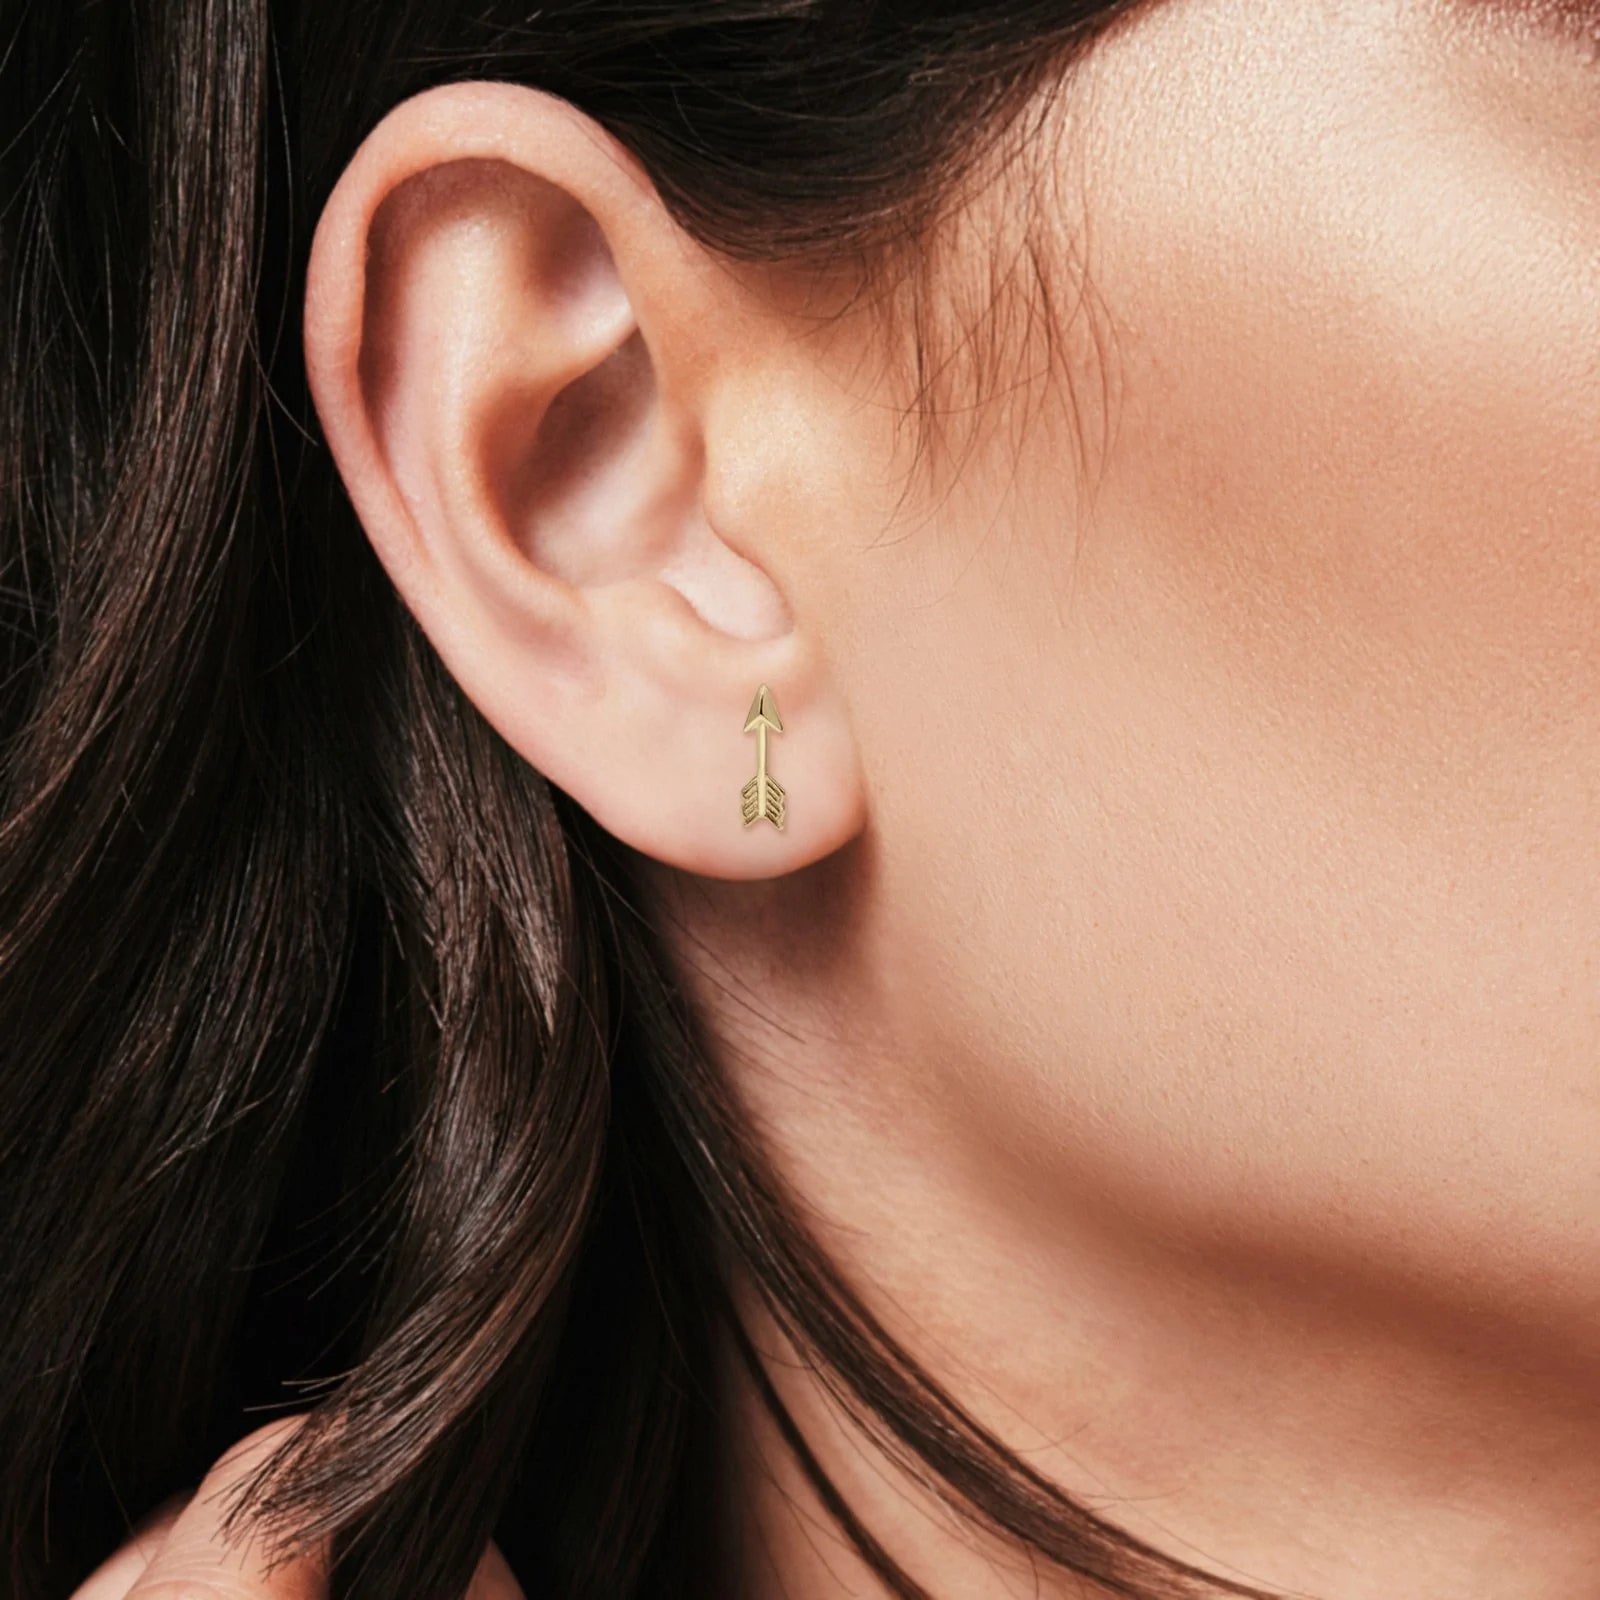 Arrow stud earrings